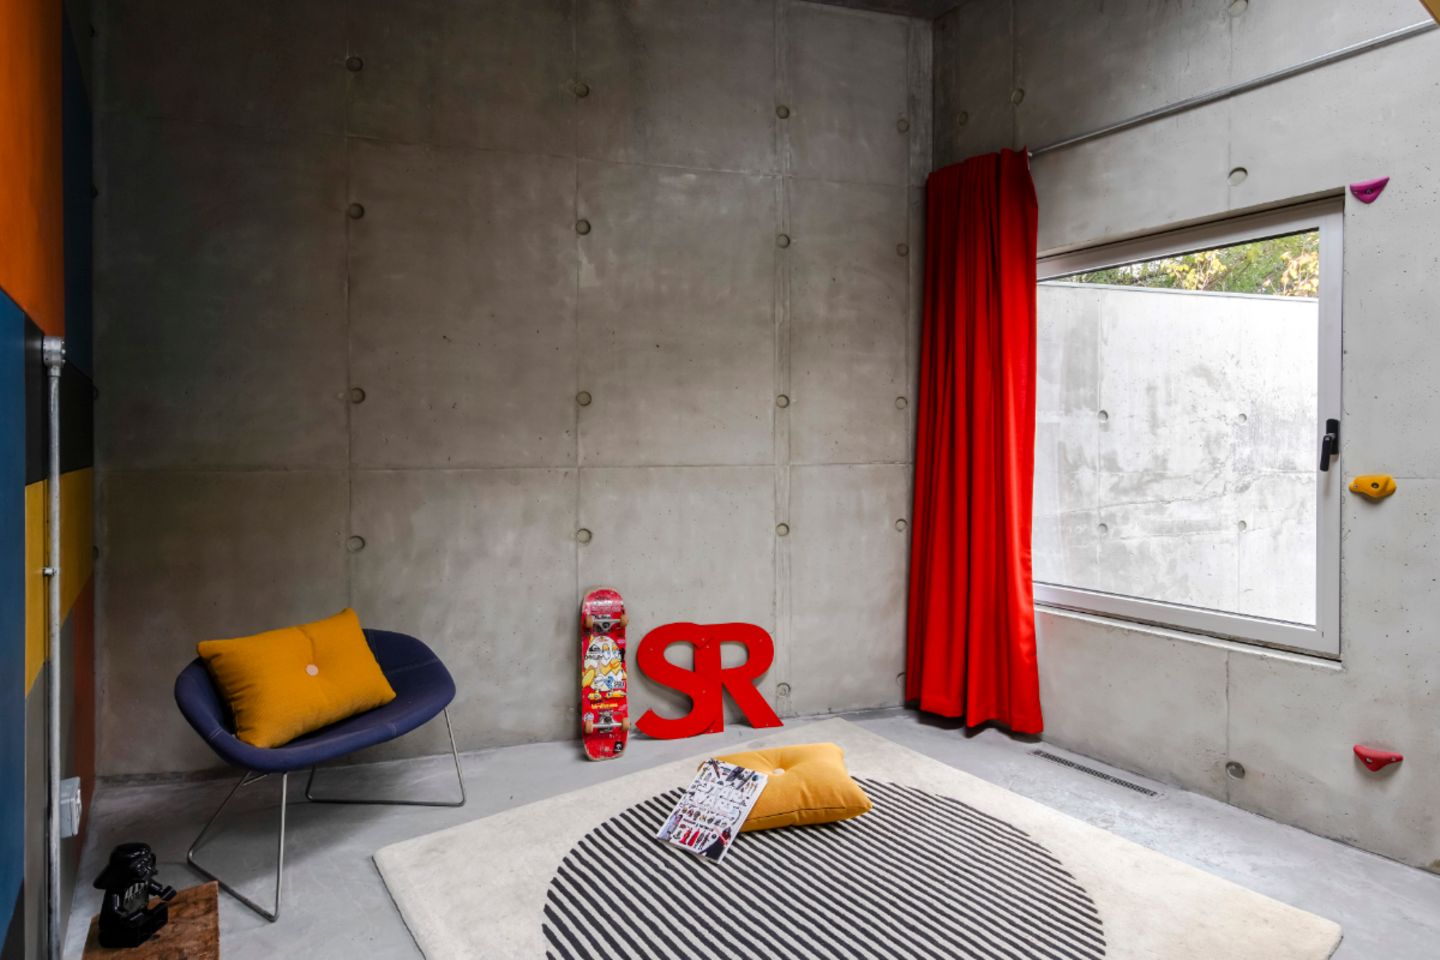 Jugendzimmer mit dickem Teppich auf dem Betonboden, roter Vorhang vor dem Fenster